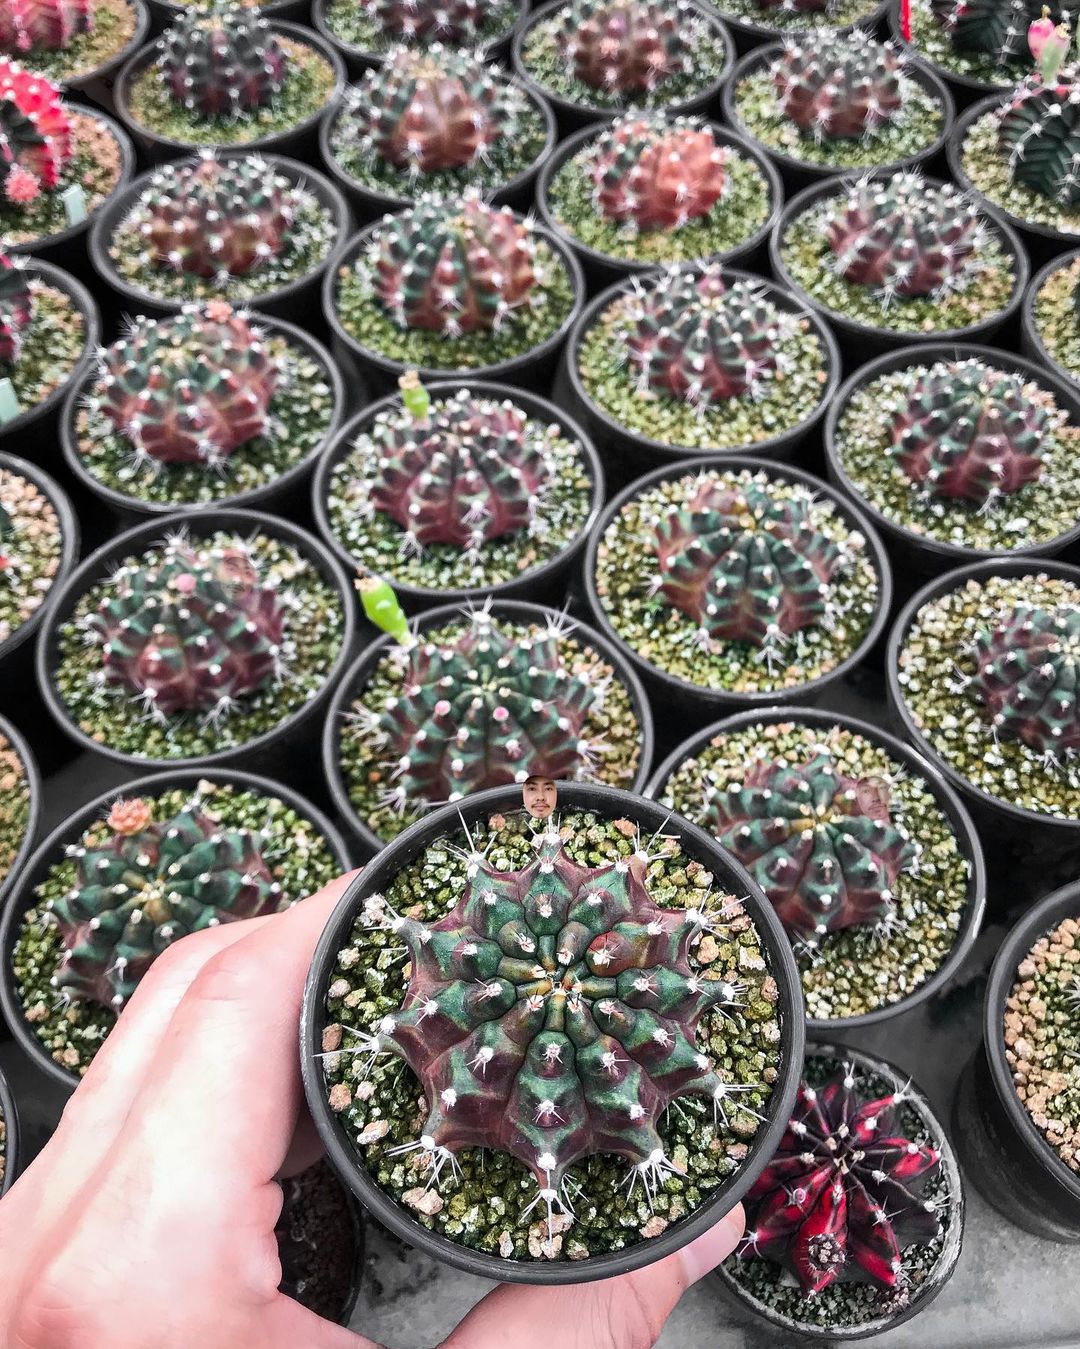 Кактусы и другие растения на снимках Ваширапола Дипрома